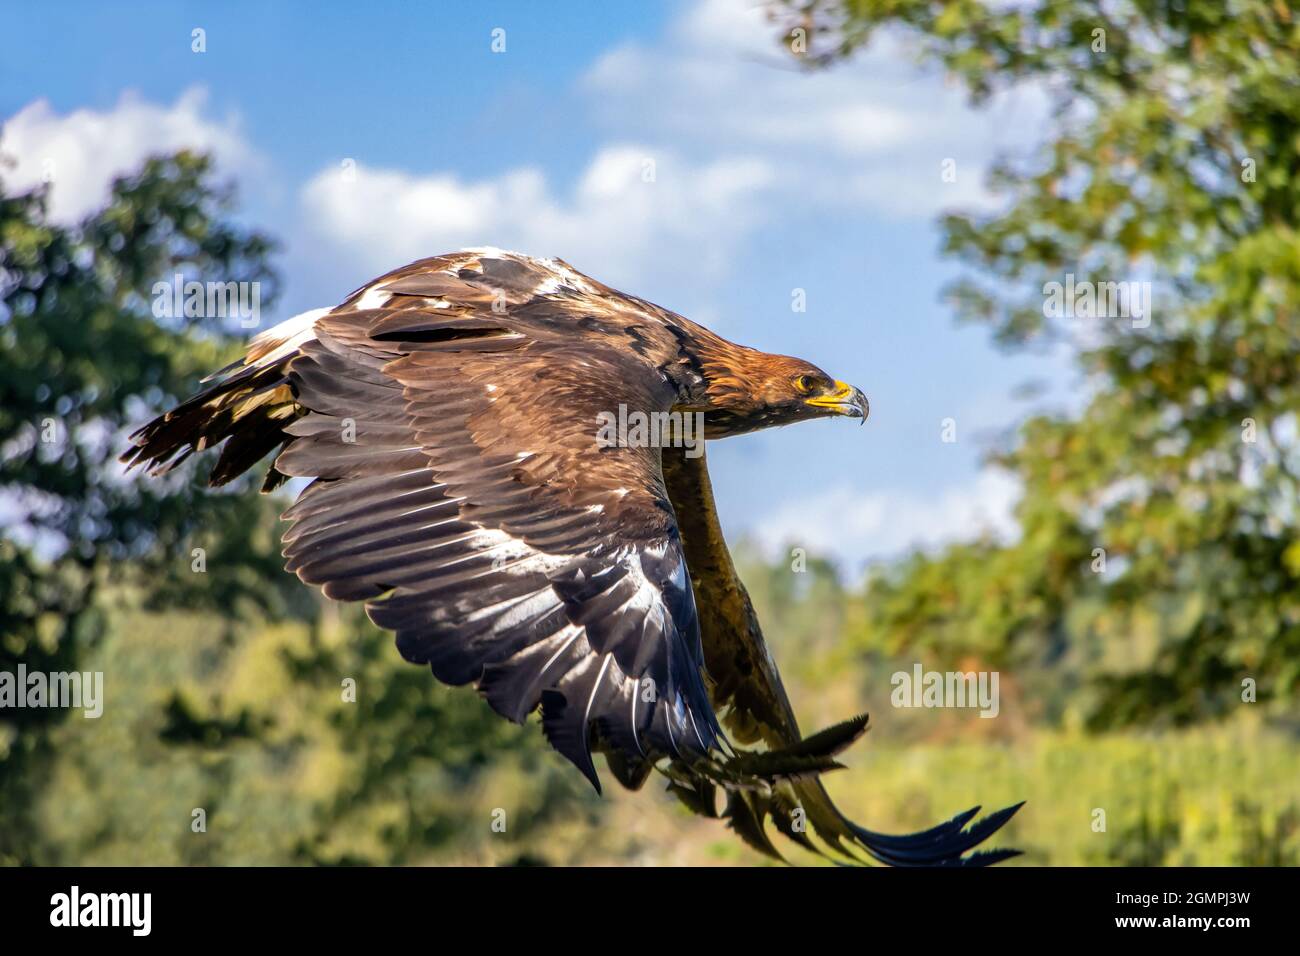 L'aigle d'or (Aquila chrysaetos) volant d'une nature estivale avec la lumière du soleil Banque D'Images